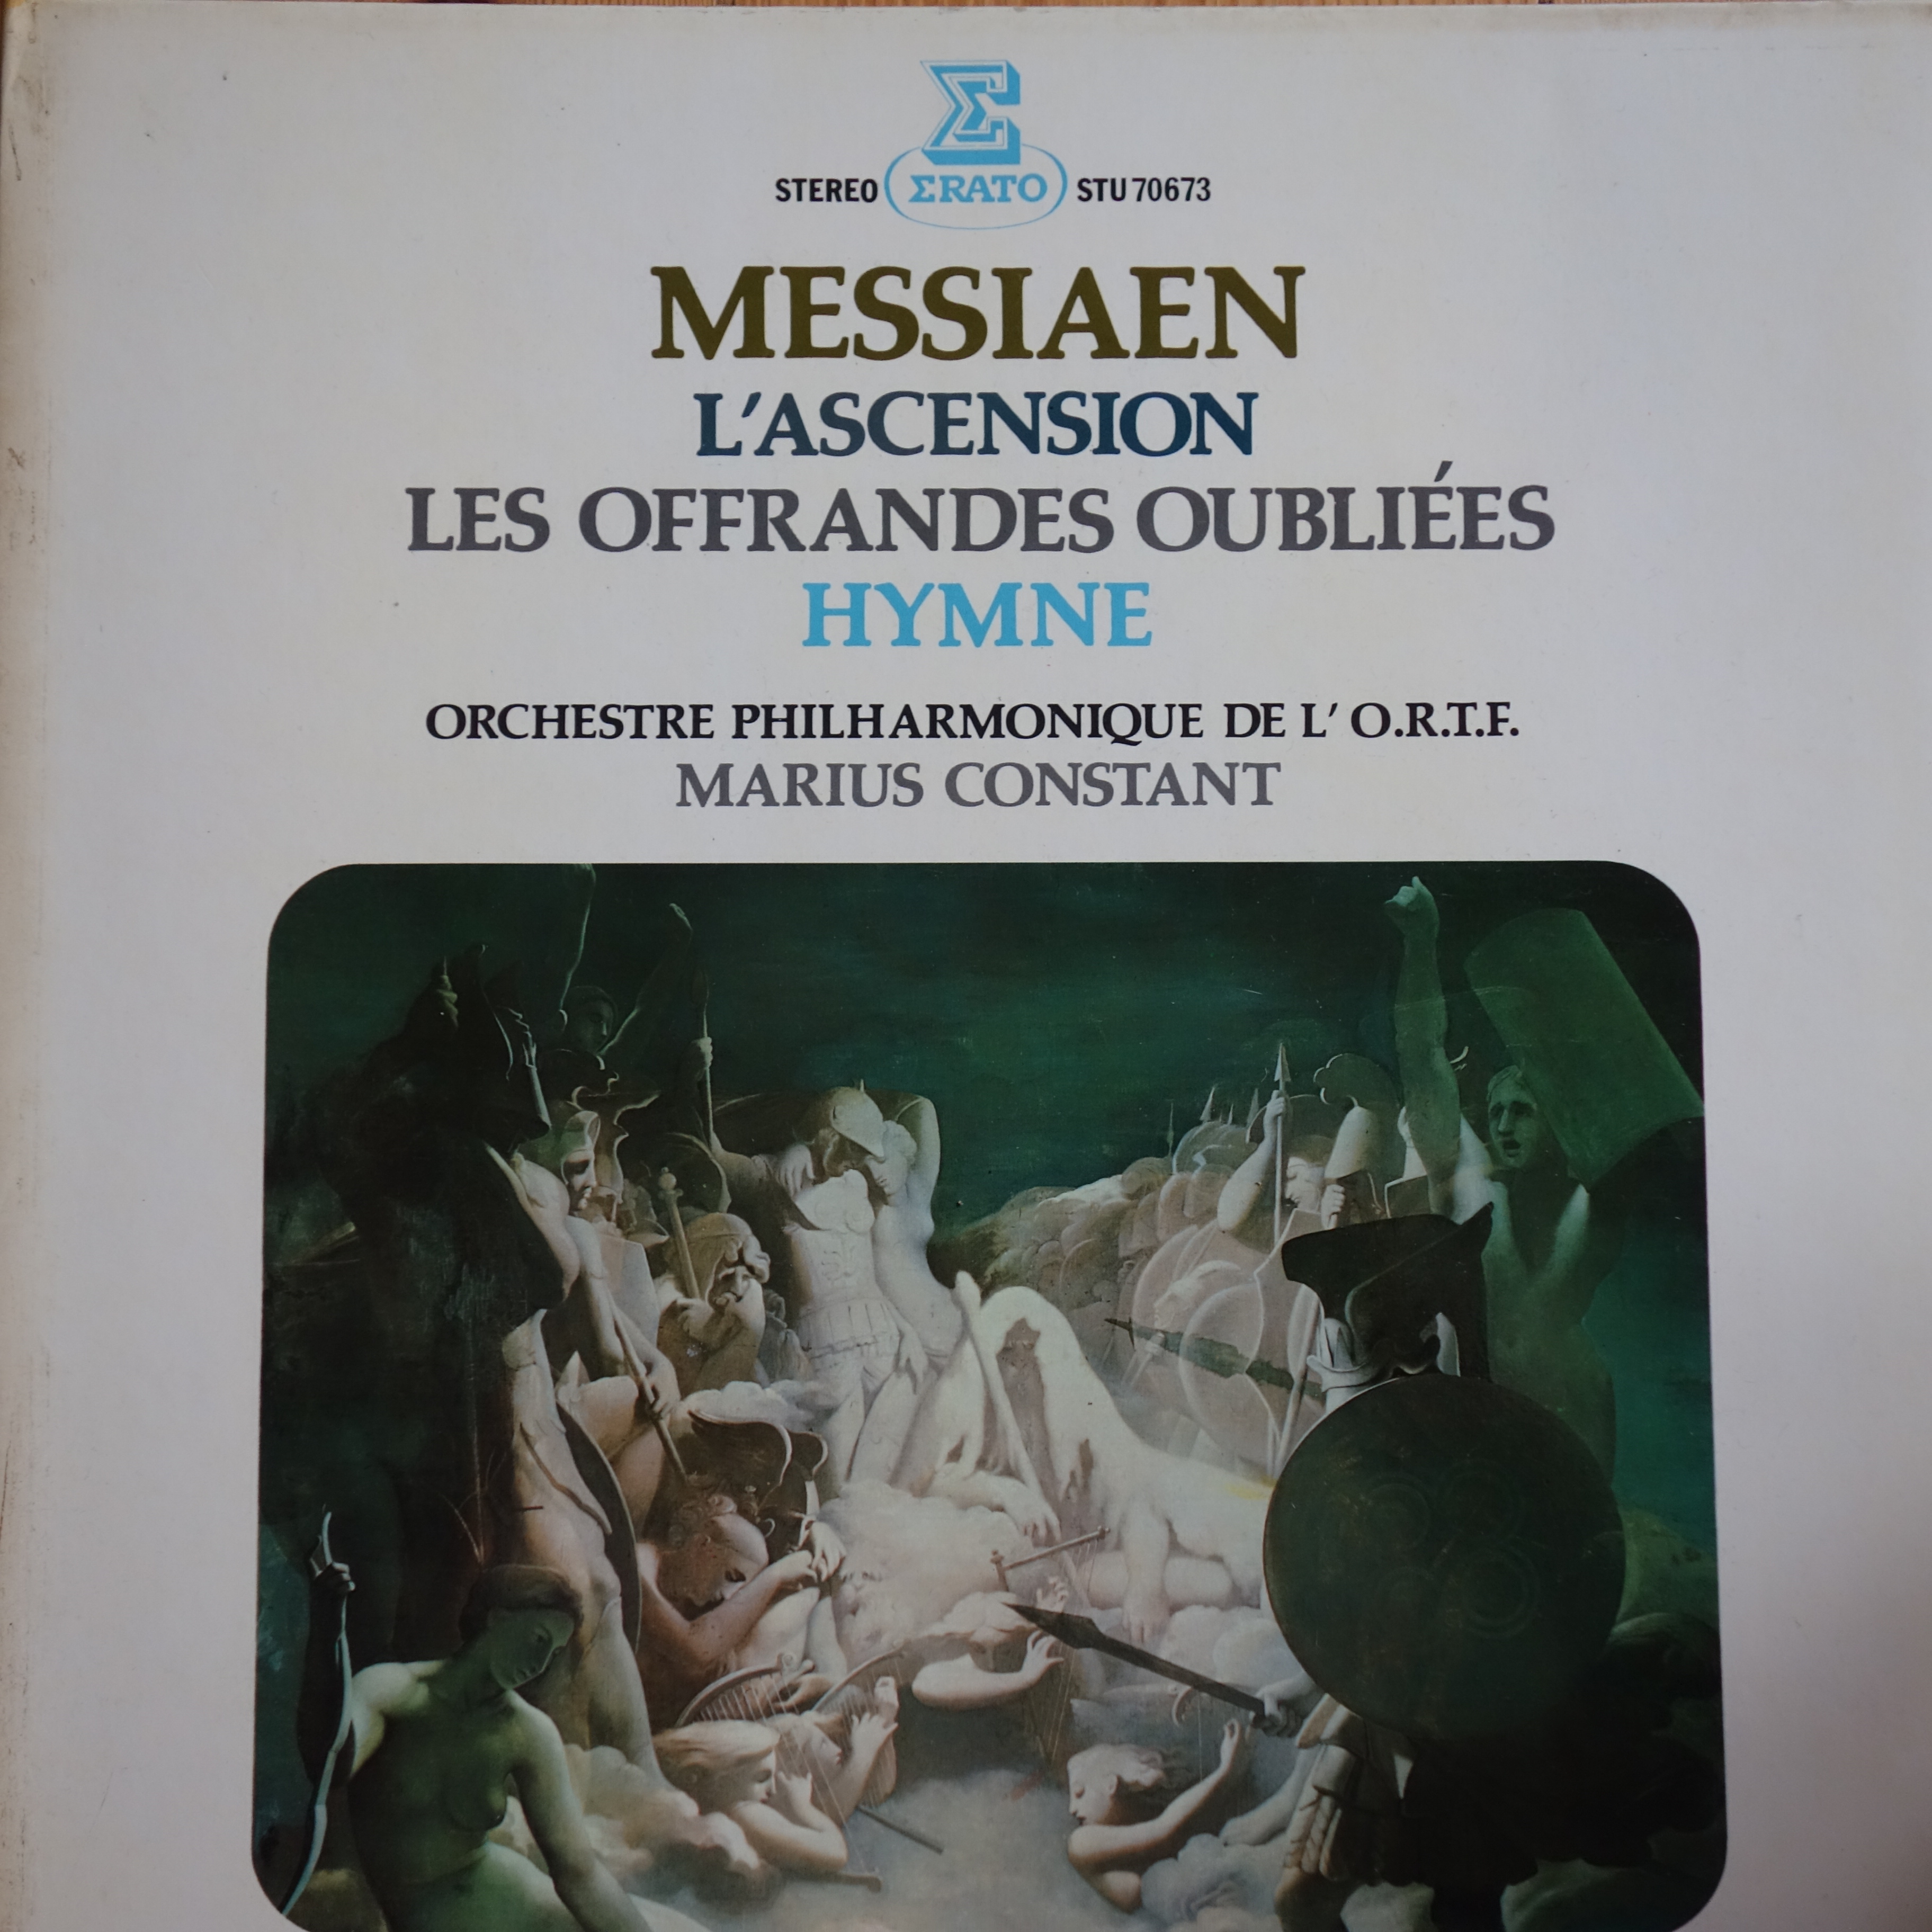 STU 70673 Messiaen L'Ascension, Les Offrandes Oublies, Hymne / Marius Constant